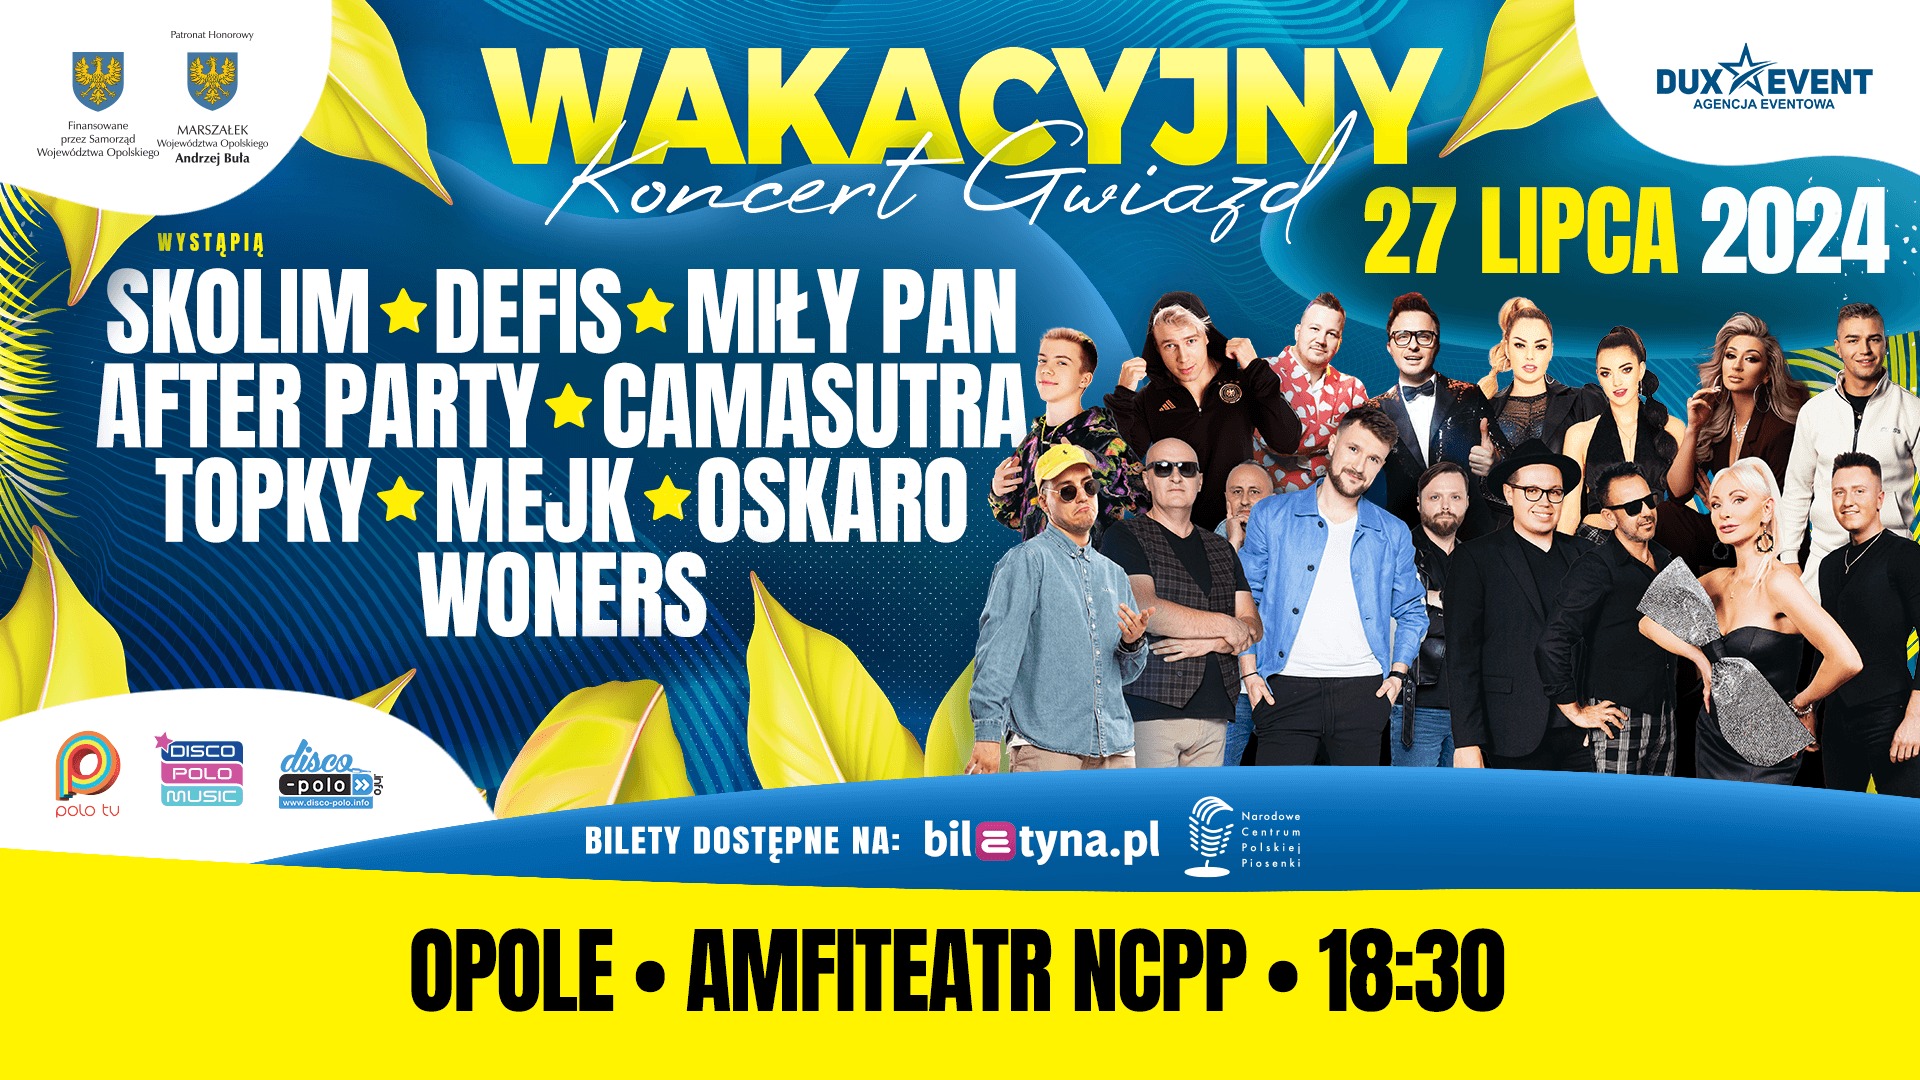 Wakacyjny Koncert Gwiazd - Disco Polo w Opolu 2024 - Najważniejsze informacje. Zdobądź bilety VIP! 